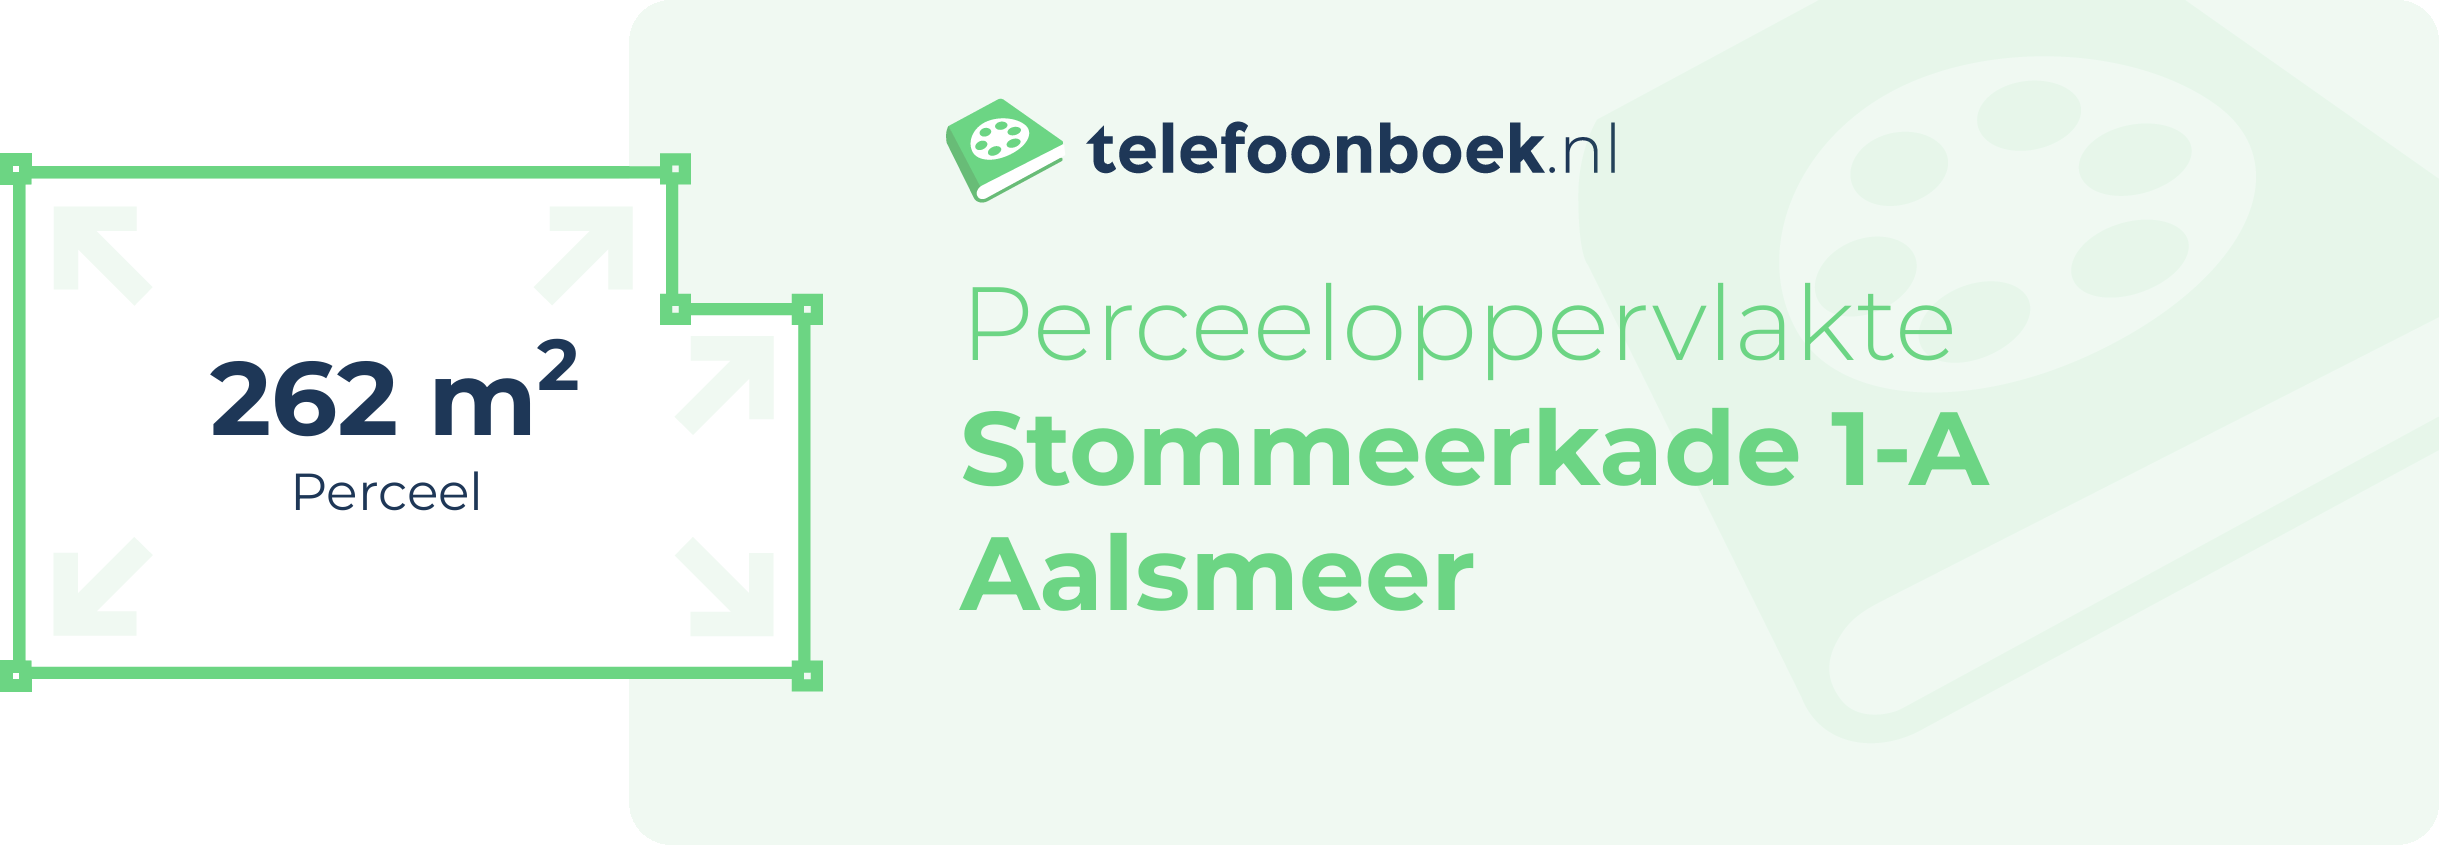 Perceeloppervlakte Stommeerkade 1-A Aalsmeer